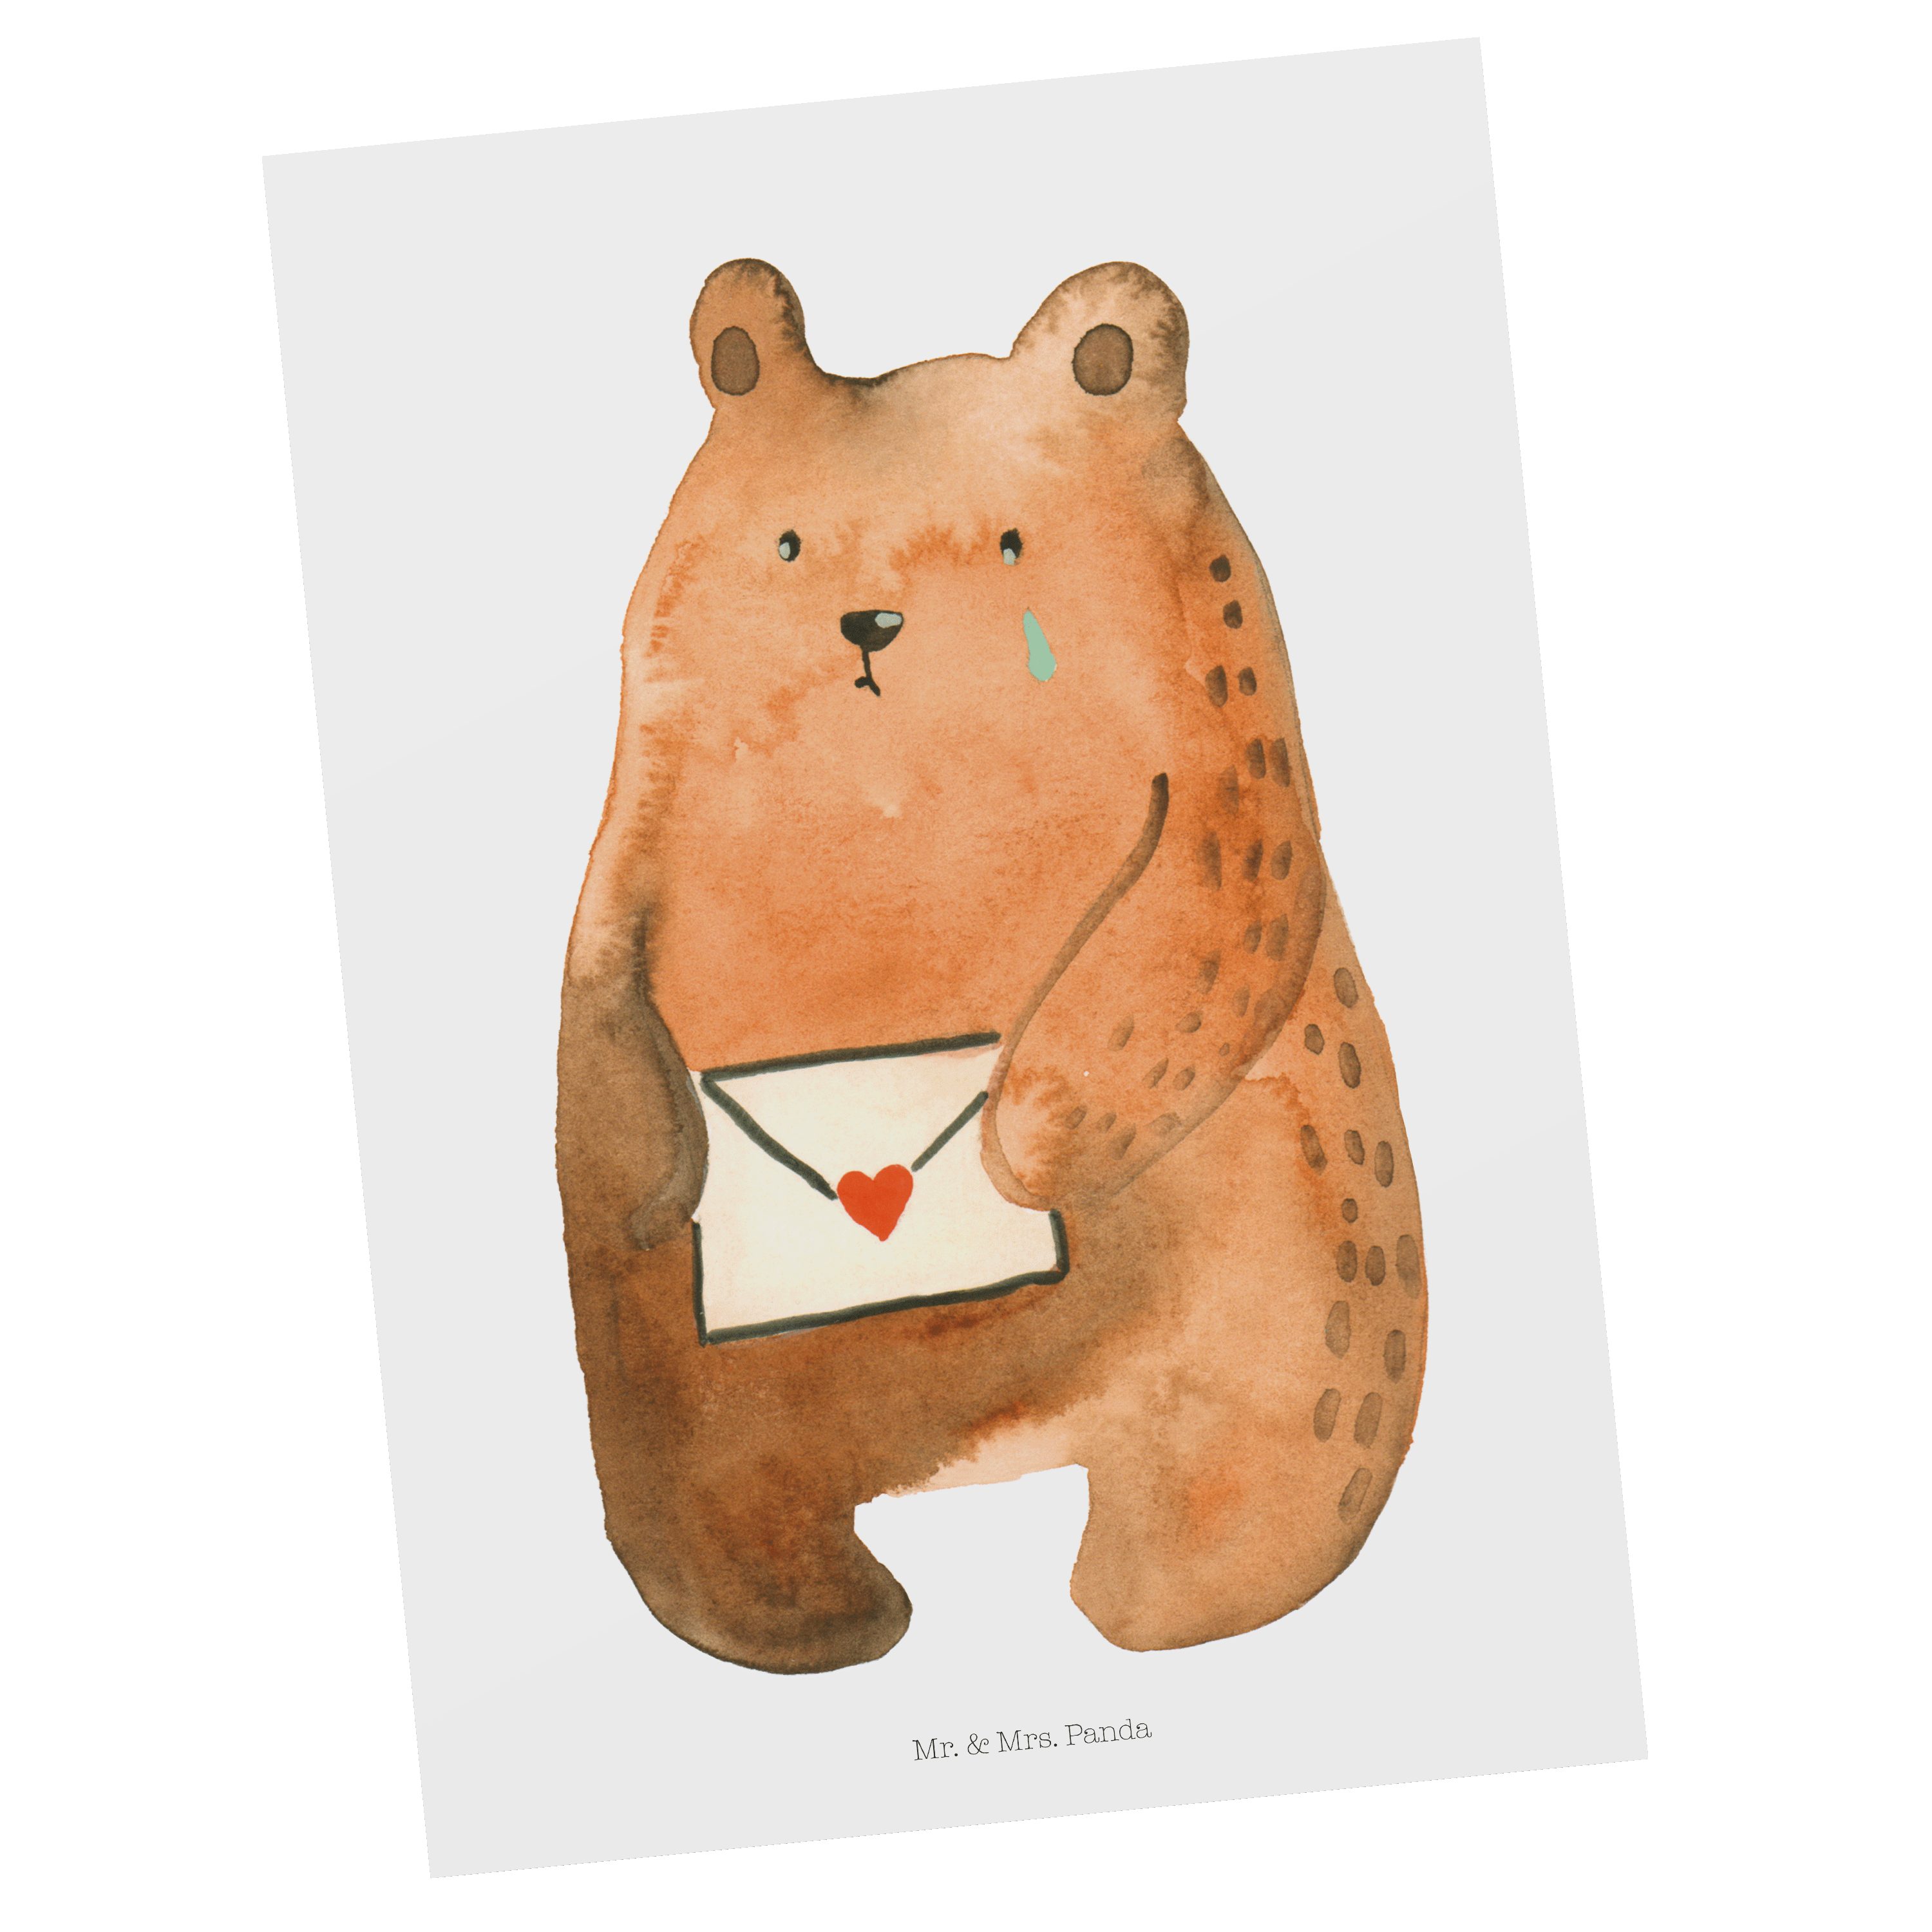 Mr. & Mrs. Weiß Panda - Verreist Ich - Bär Einladung, Freund, Geschenk, Postkarte dich vermisse